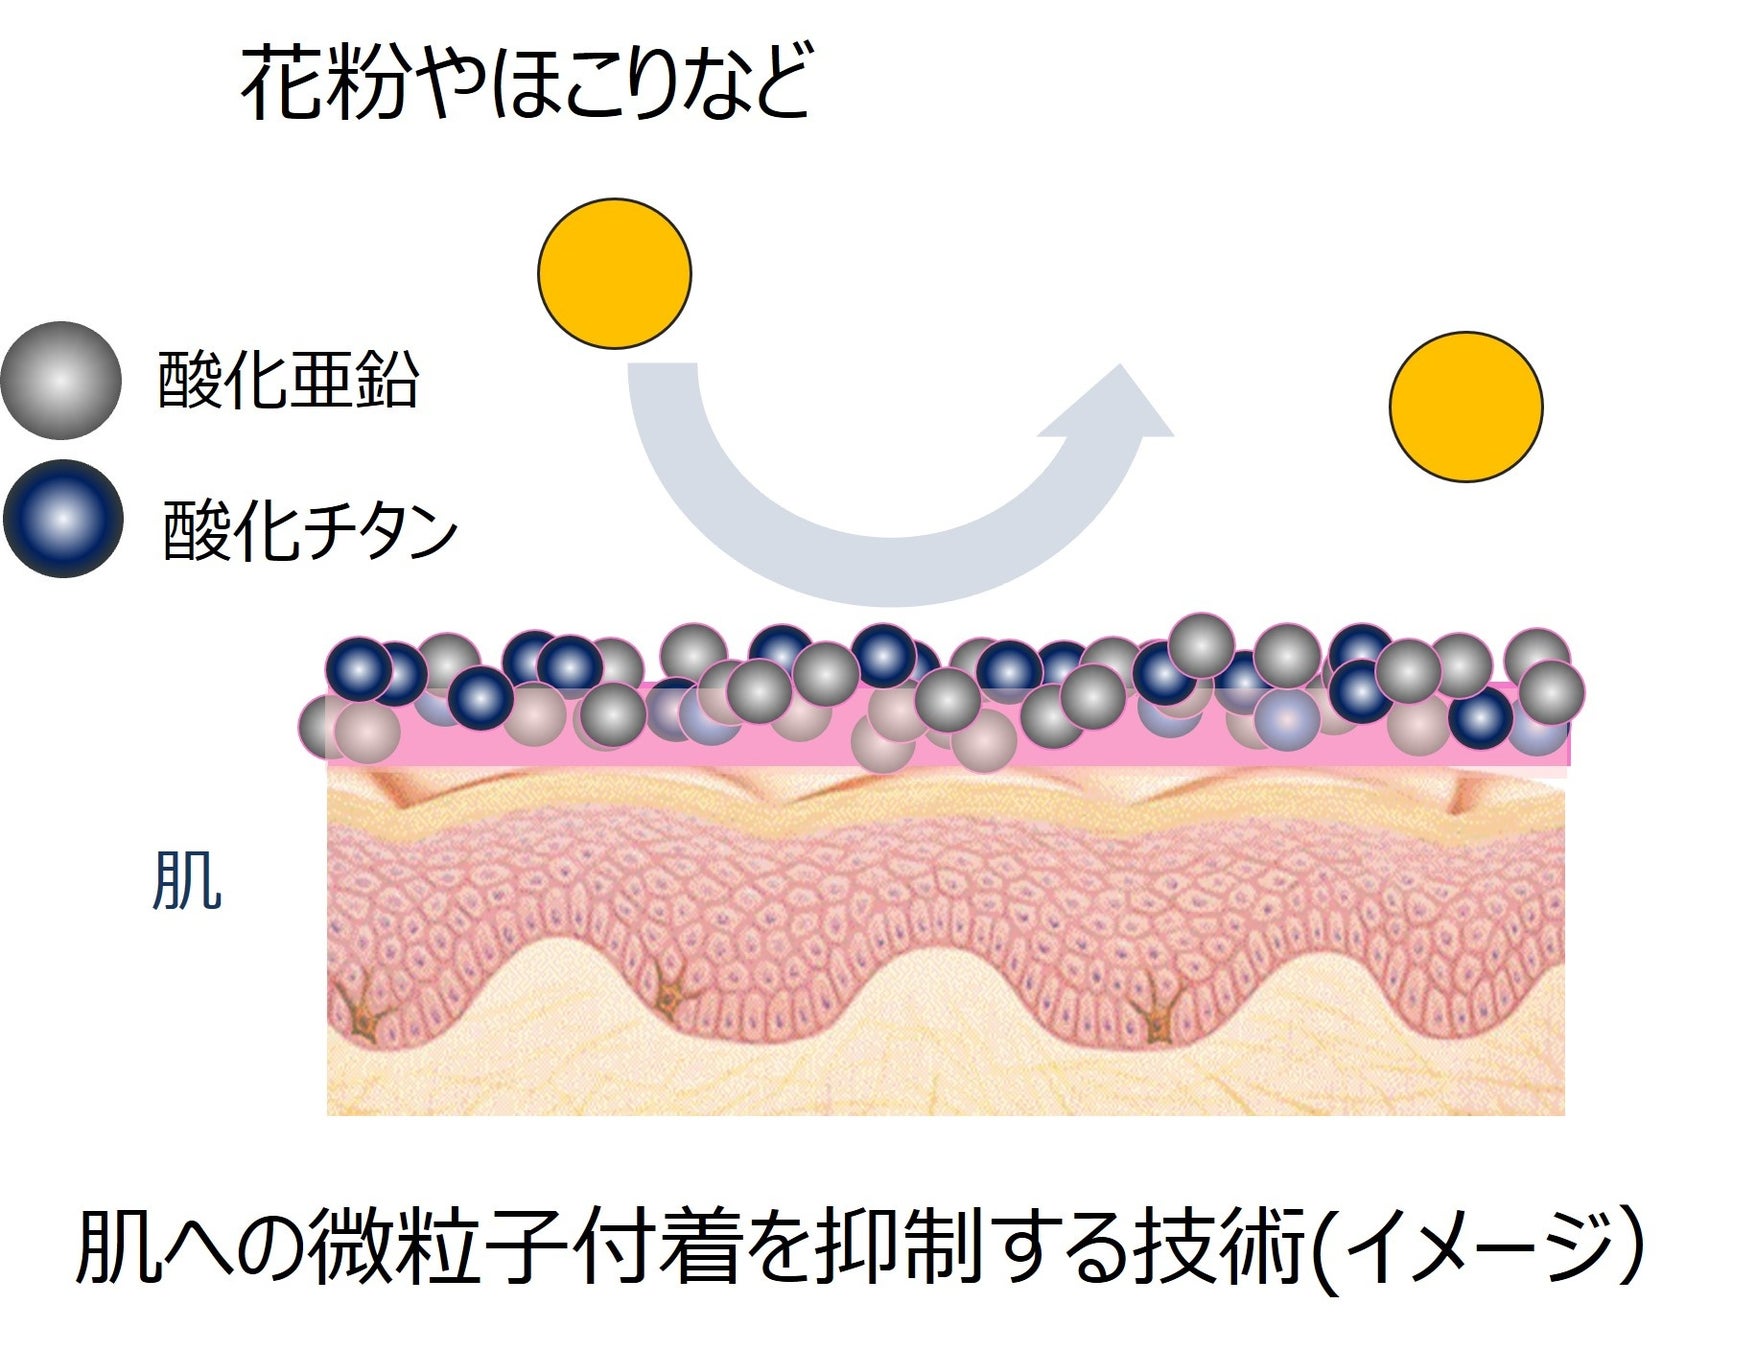 ほこり・花粉などの微粒子の付着を防ぐことの肌への影響を確認～肌への接触刺激の過敏さについての検討～